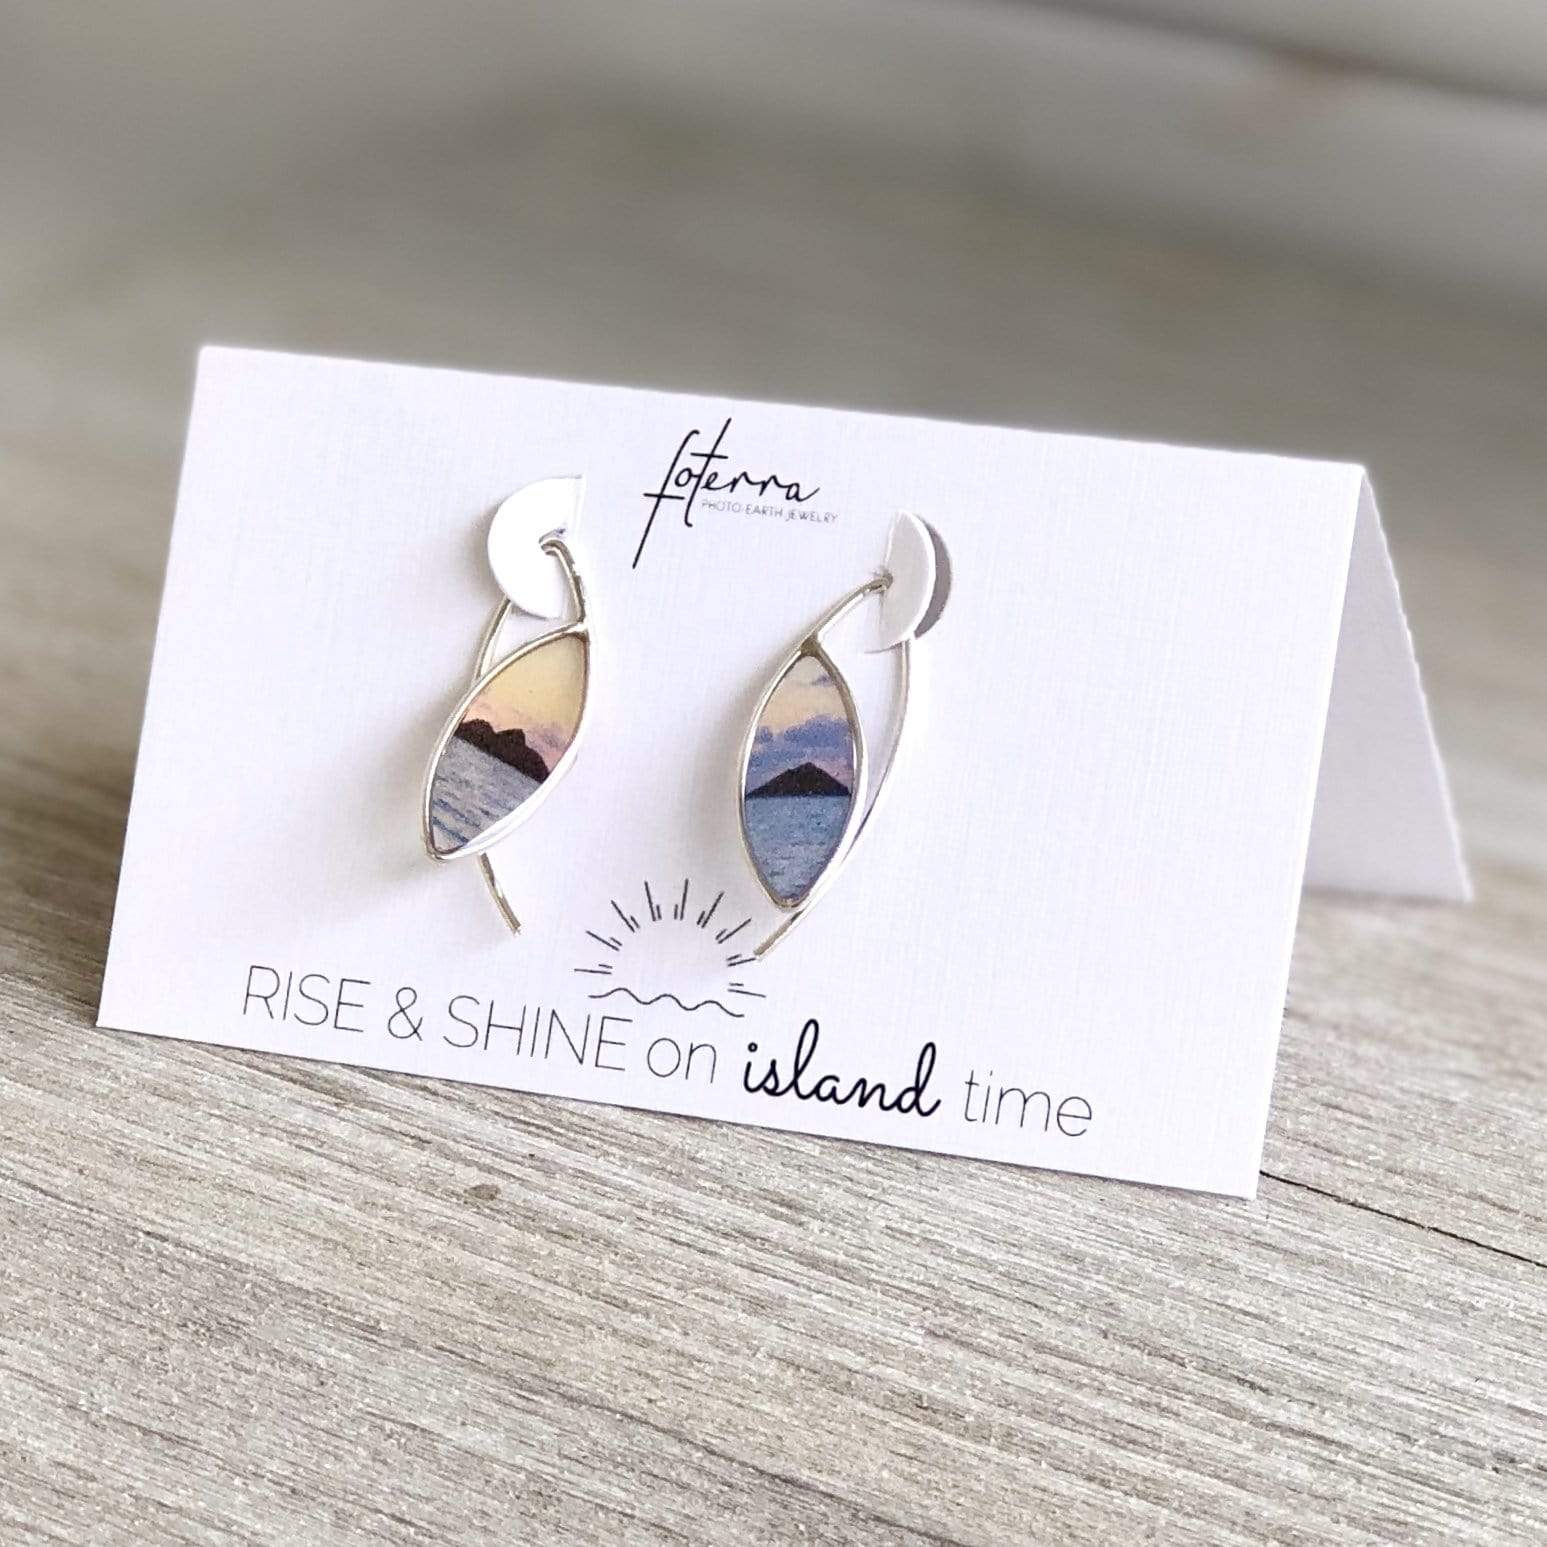 Fair trade bird earrings: Hammered Swallow Earrings (birds)